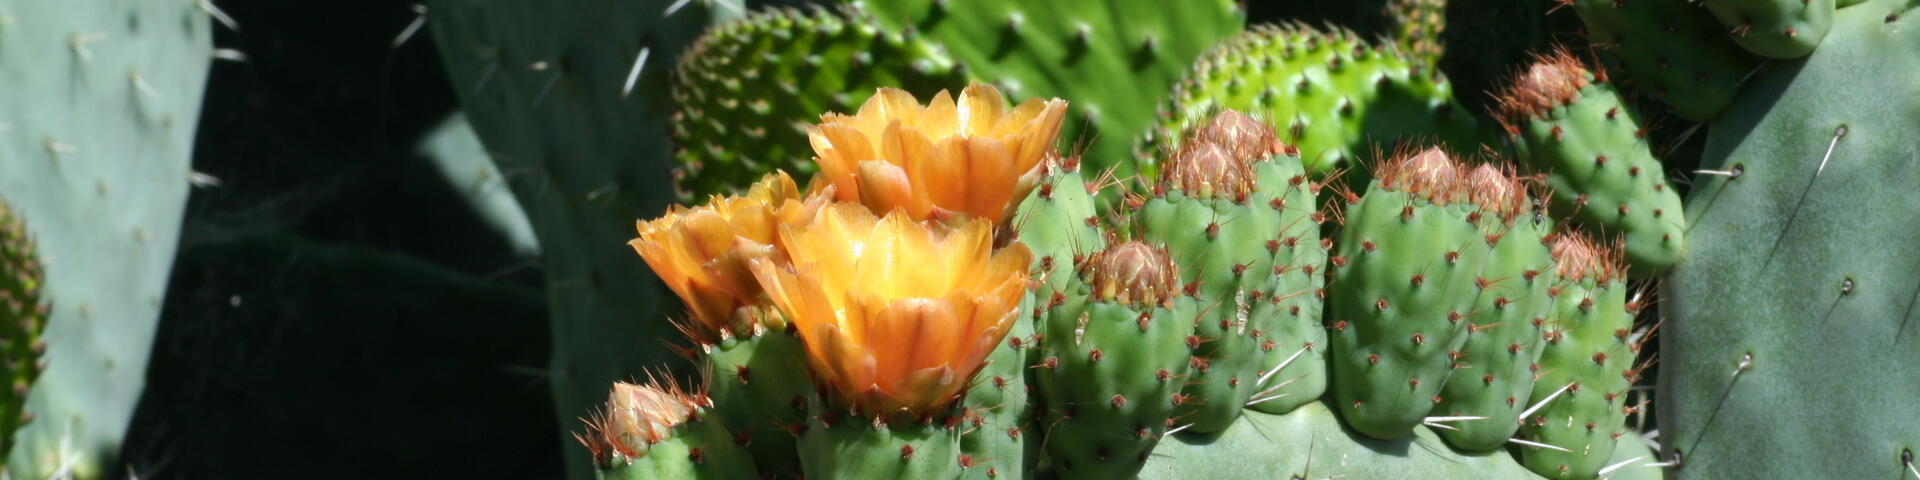 Andalucia Cactus